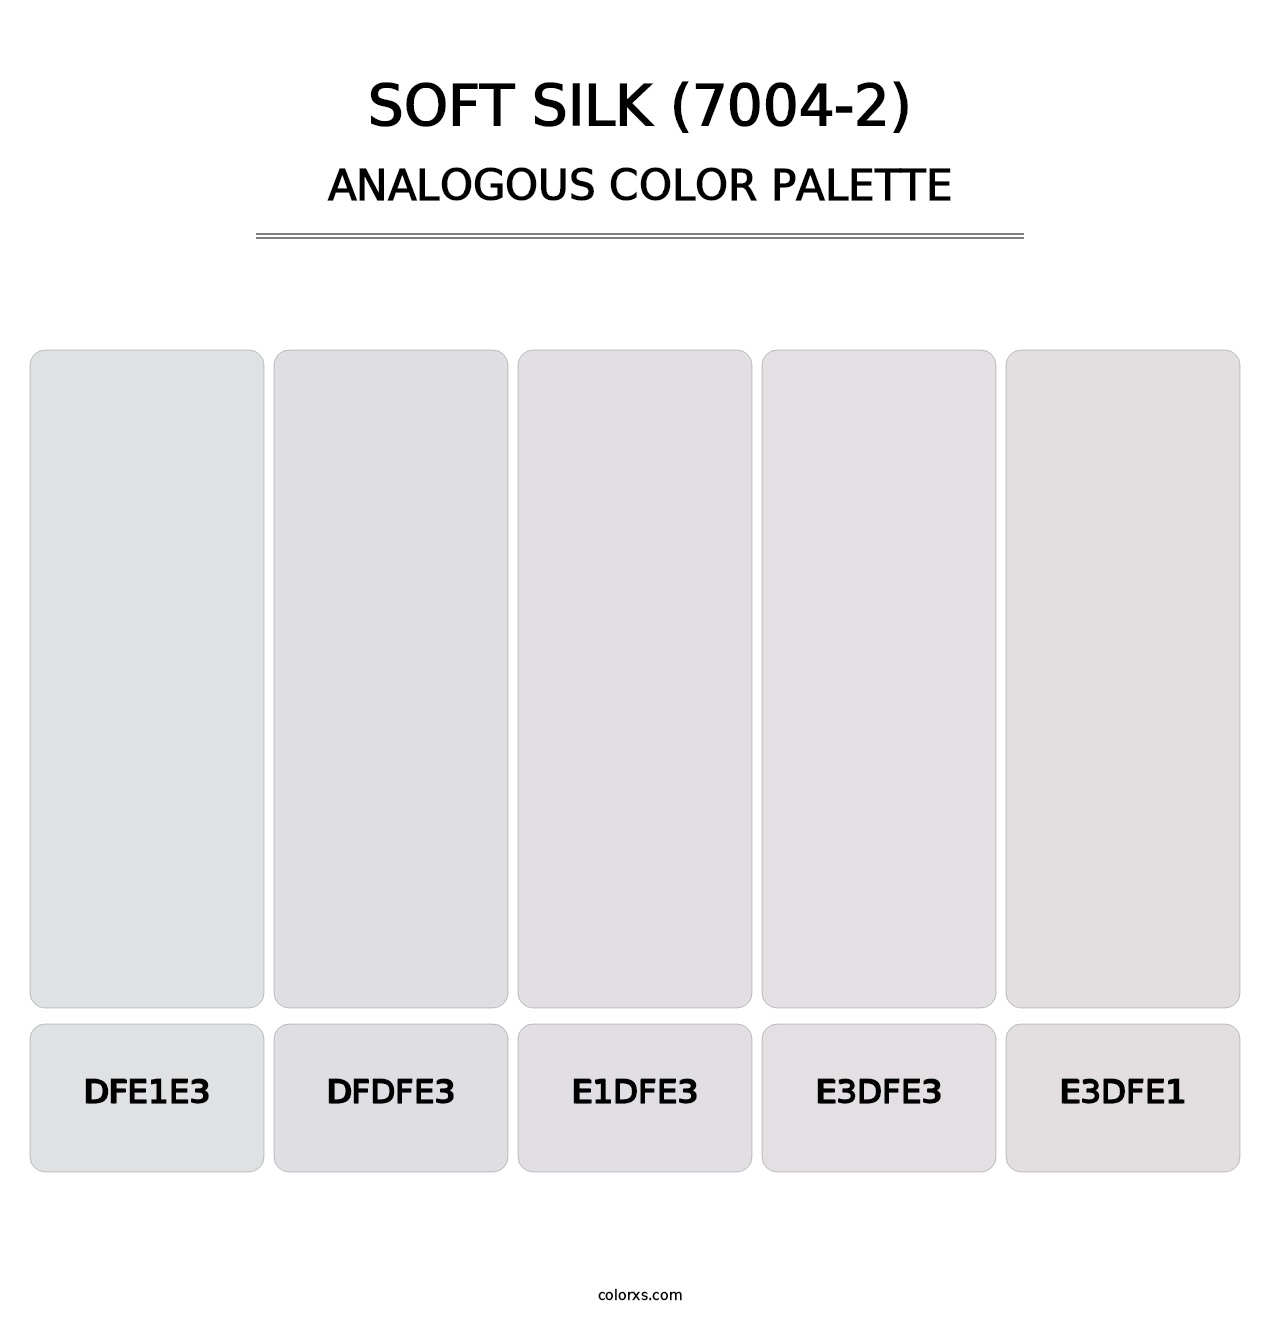 Soft Silk (7004-2) - Analogous Color Palette